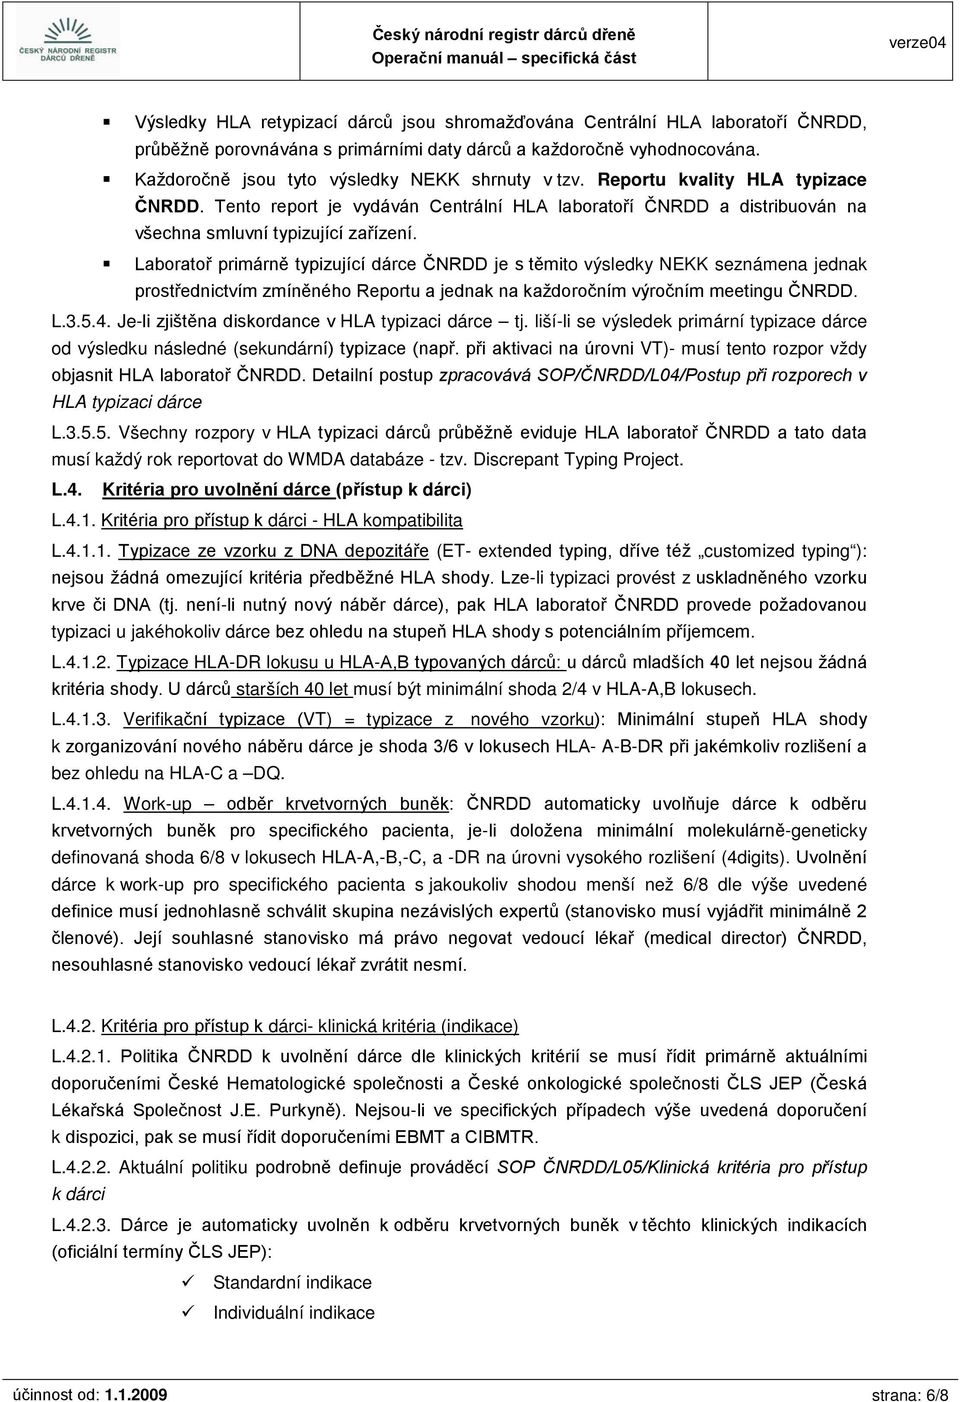 Laboratoř primárně typizující dárce ČNRDD je s těmito výsledky NEKK seznámena jednak prostřednictvím zmíněného Reportu a jednak na každoročním výročním meetingu ČNRDD. L.3.5.4.